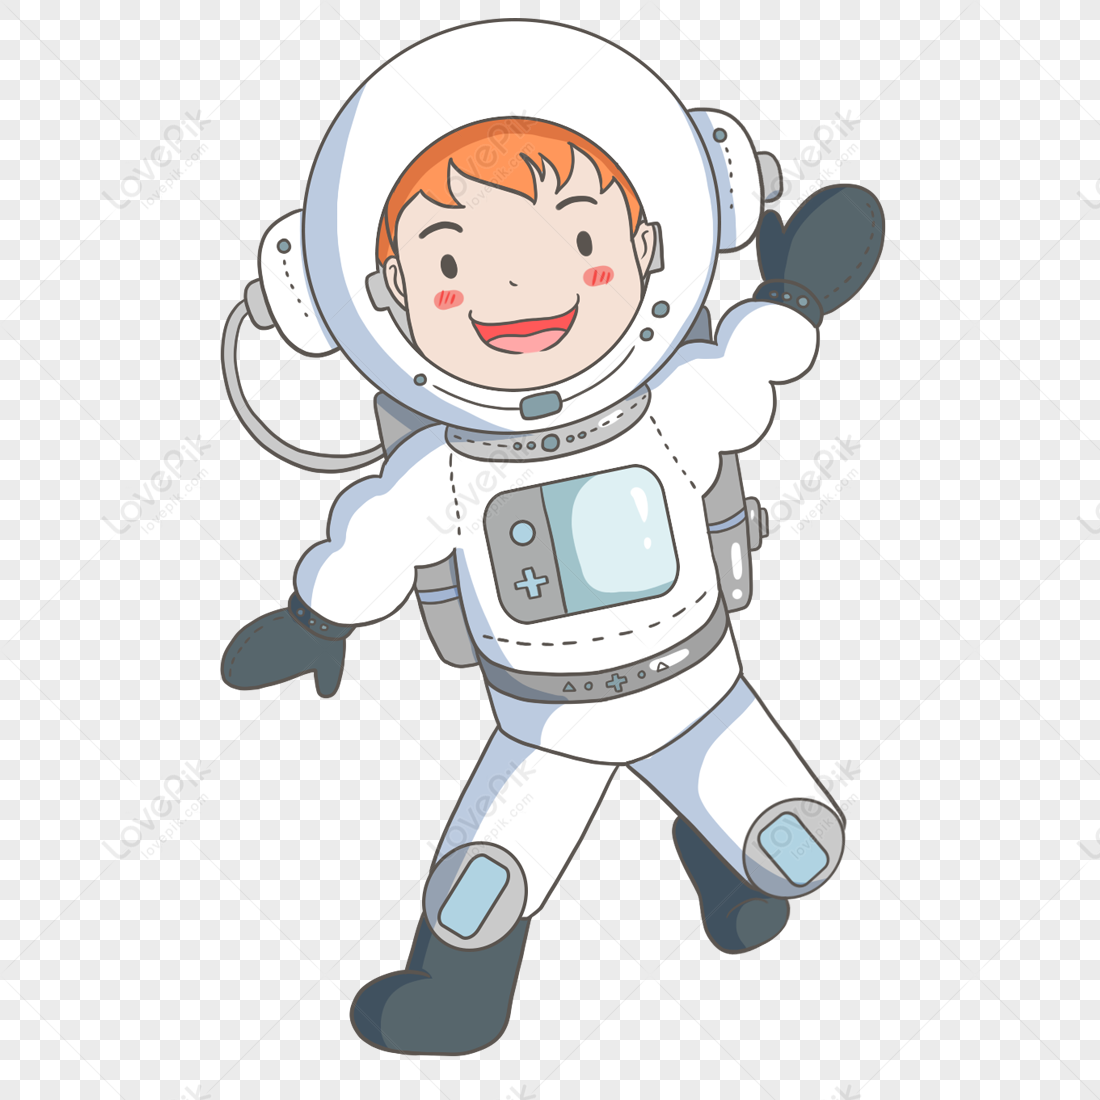 boy astronaut clipart images